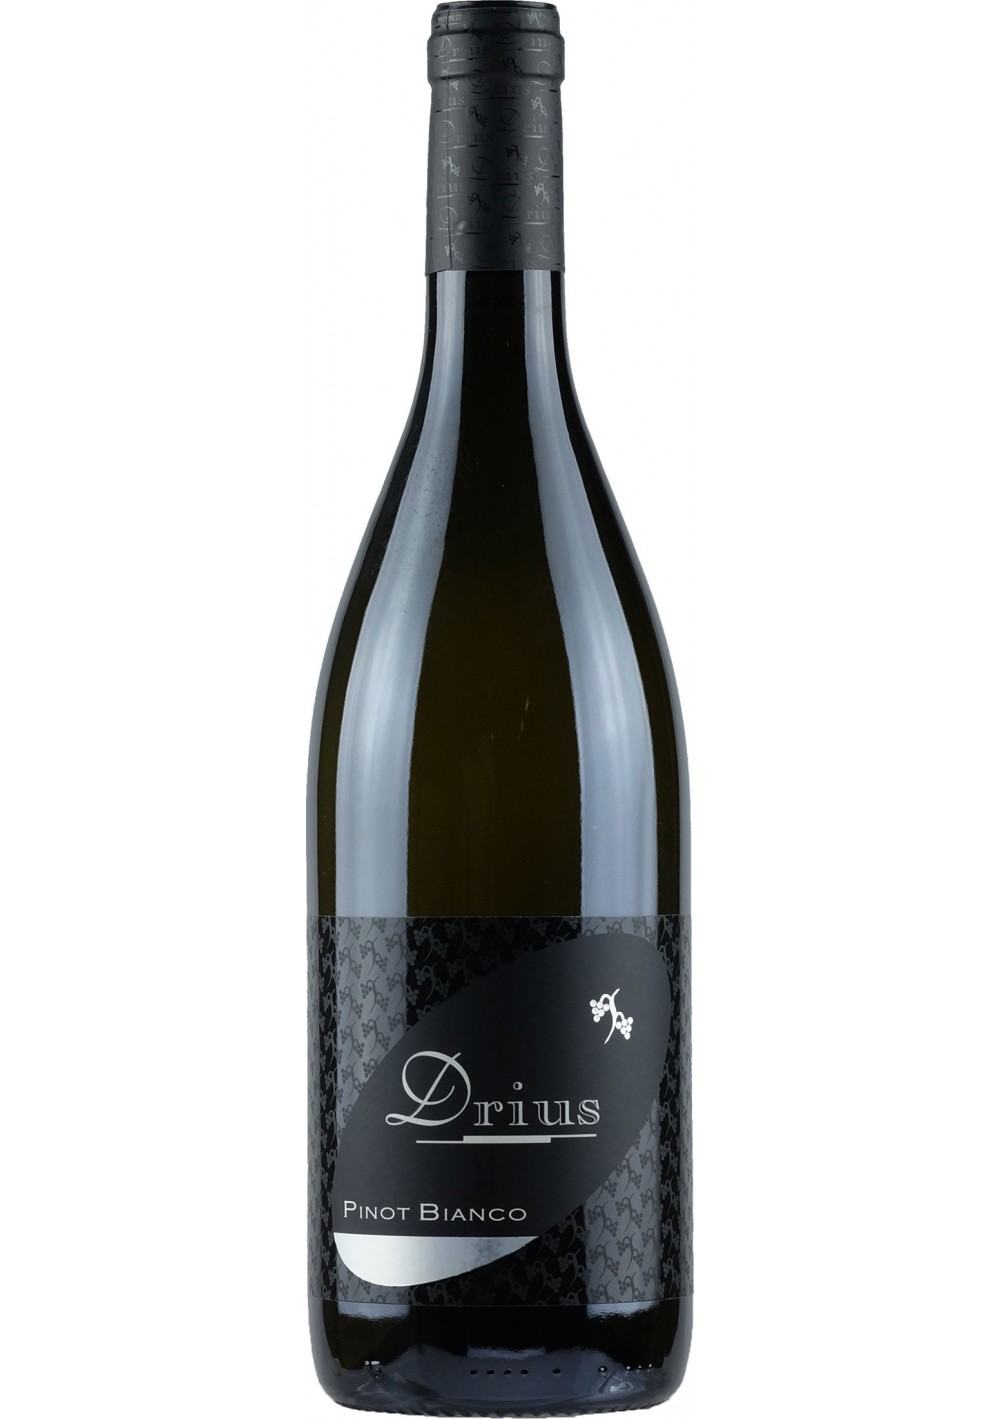 Drius Pinot Bianco 2015